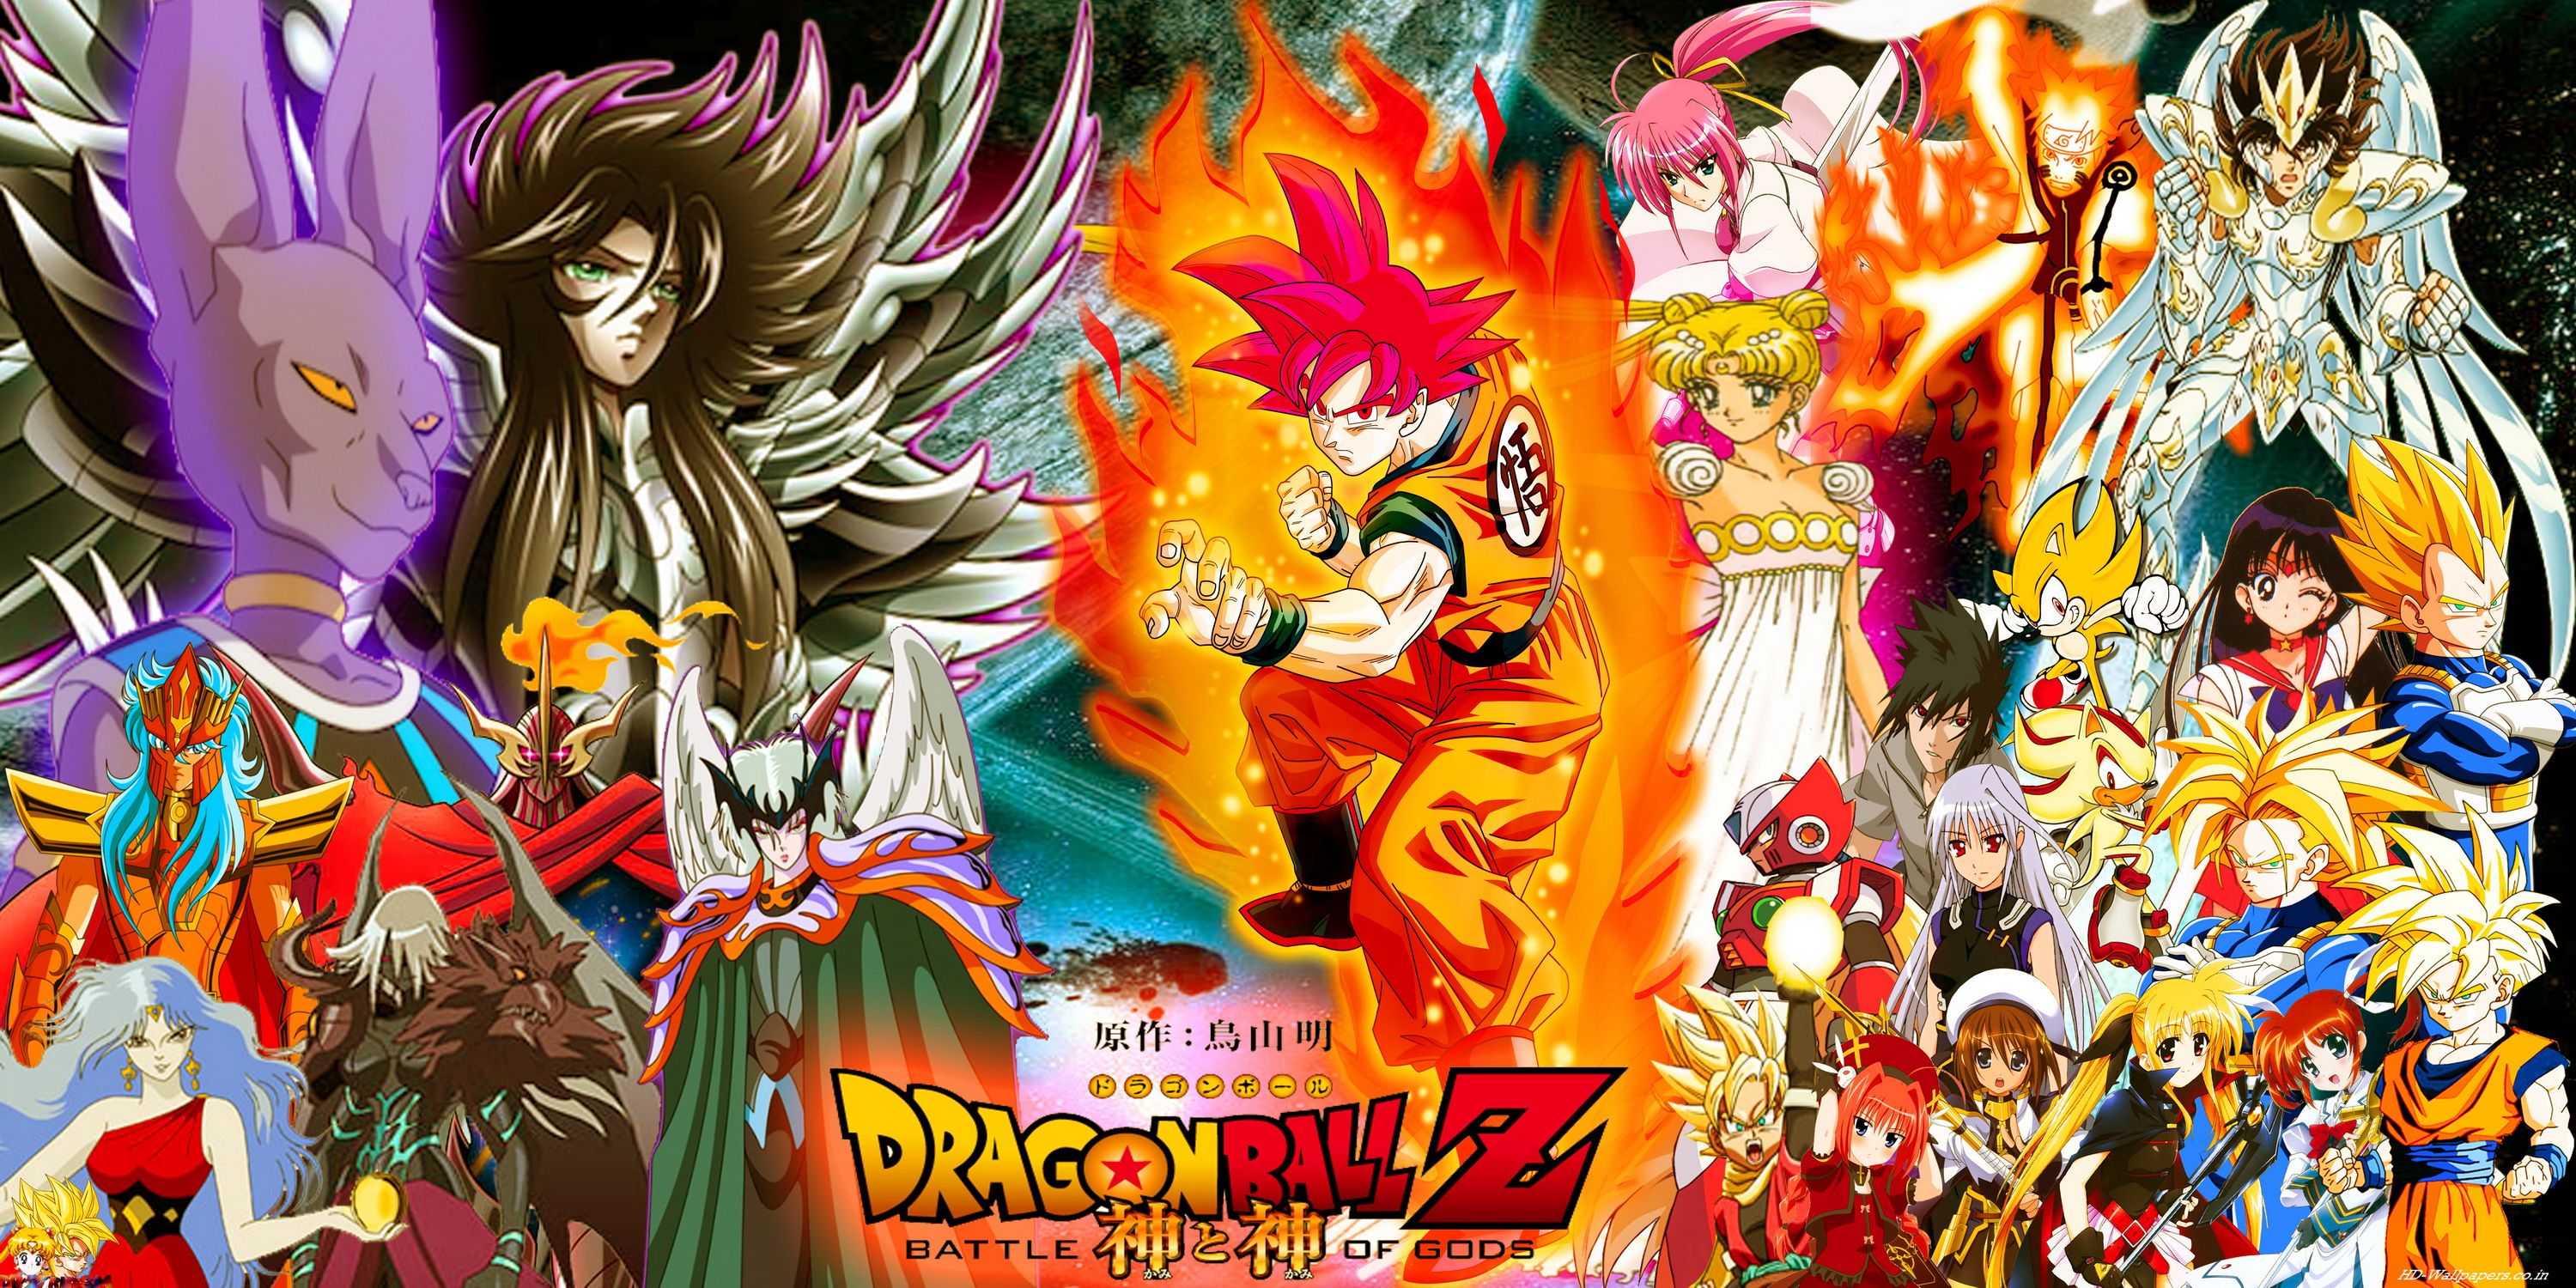 Dragon Ball Z Wallpaper. Awesome Dragon